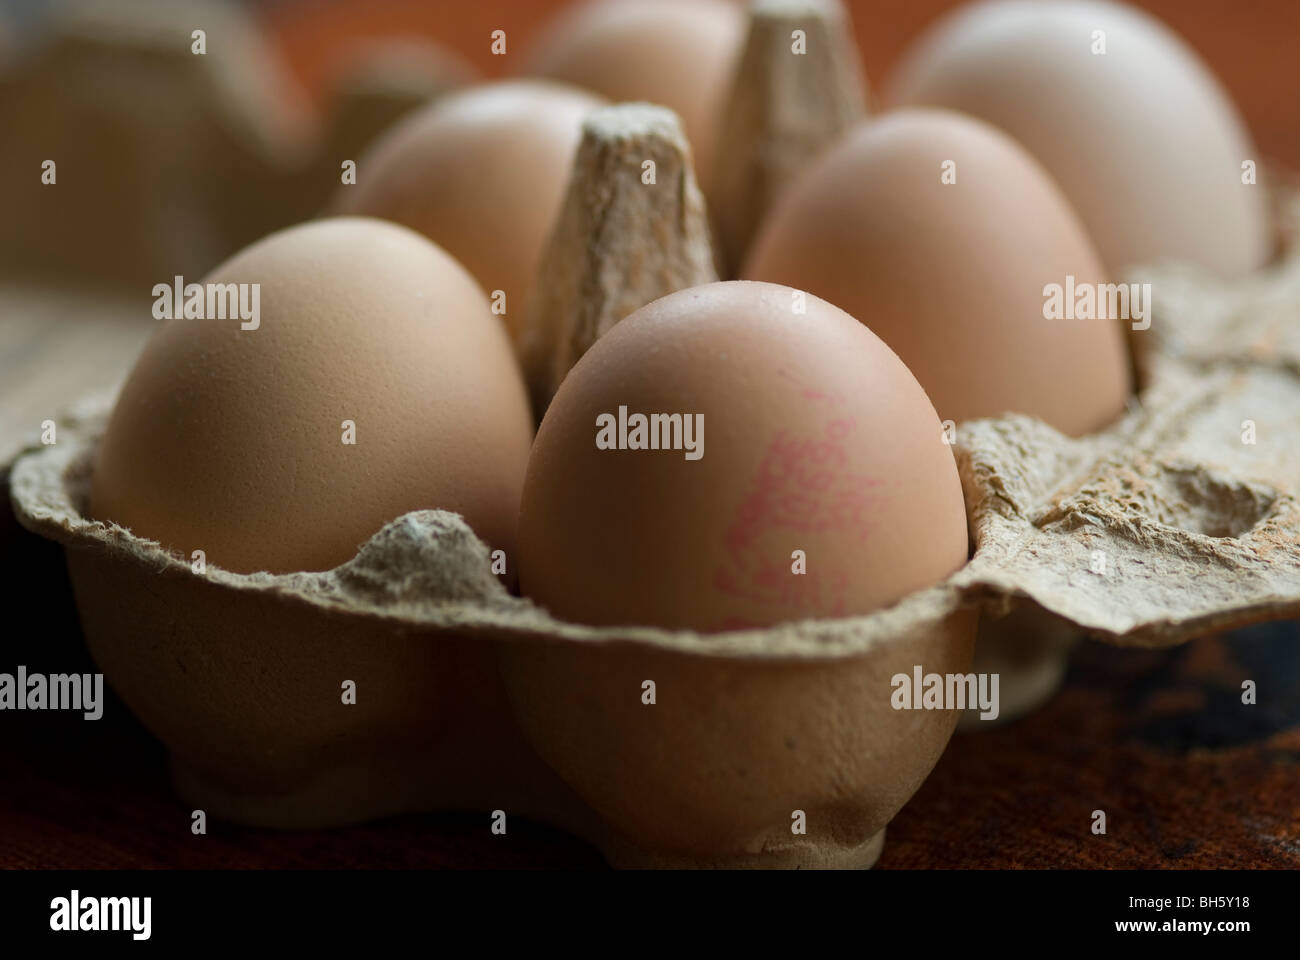 Bild von sechs Freilandeier in Großaufnahme ein ein Eierkarton genommen bei vorhandenem Licht Stockfoto